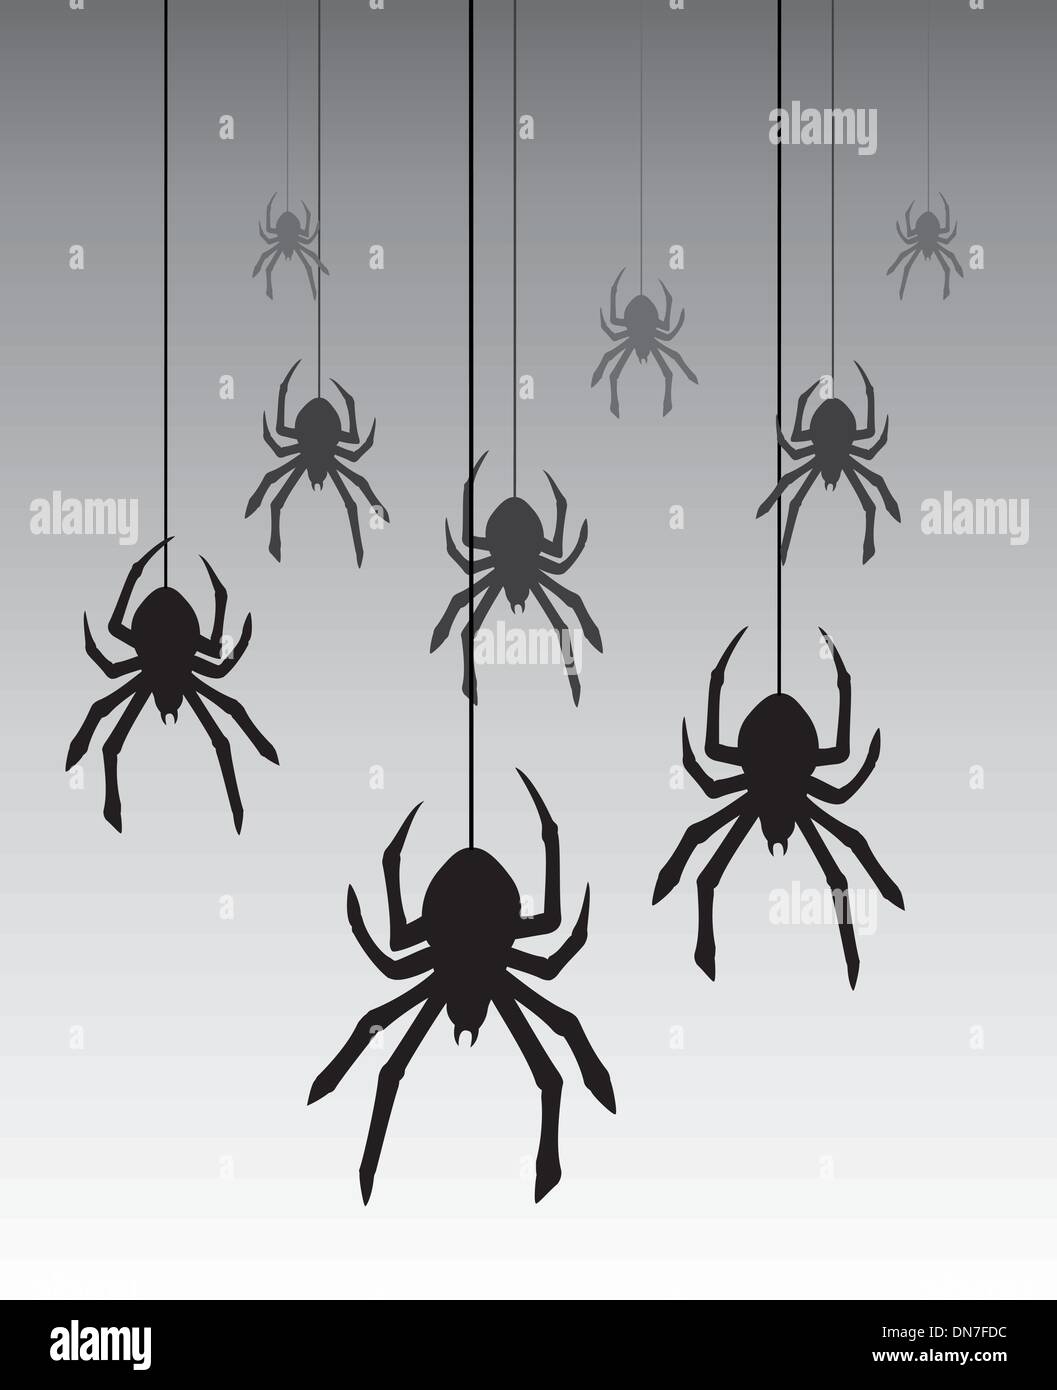 vector hanging spiders Stock Vector